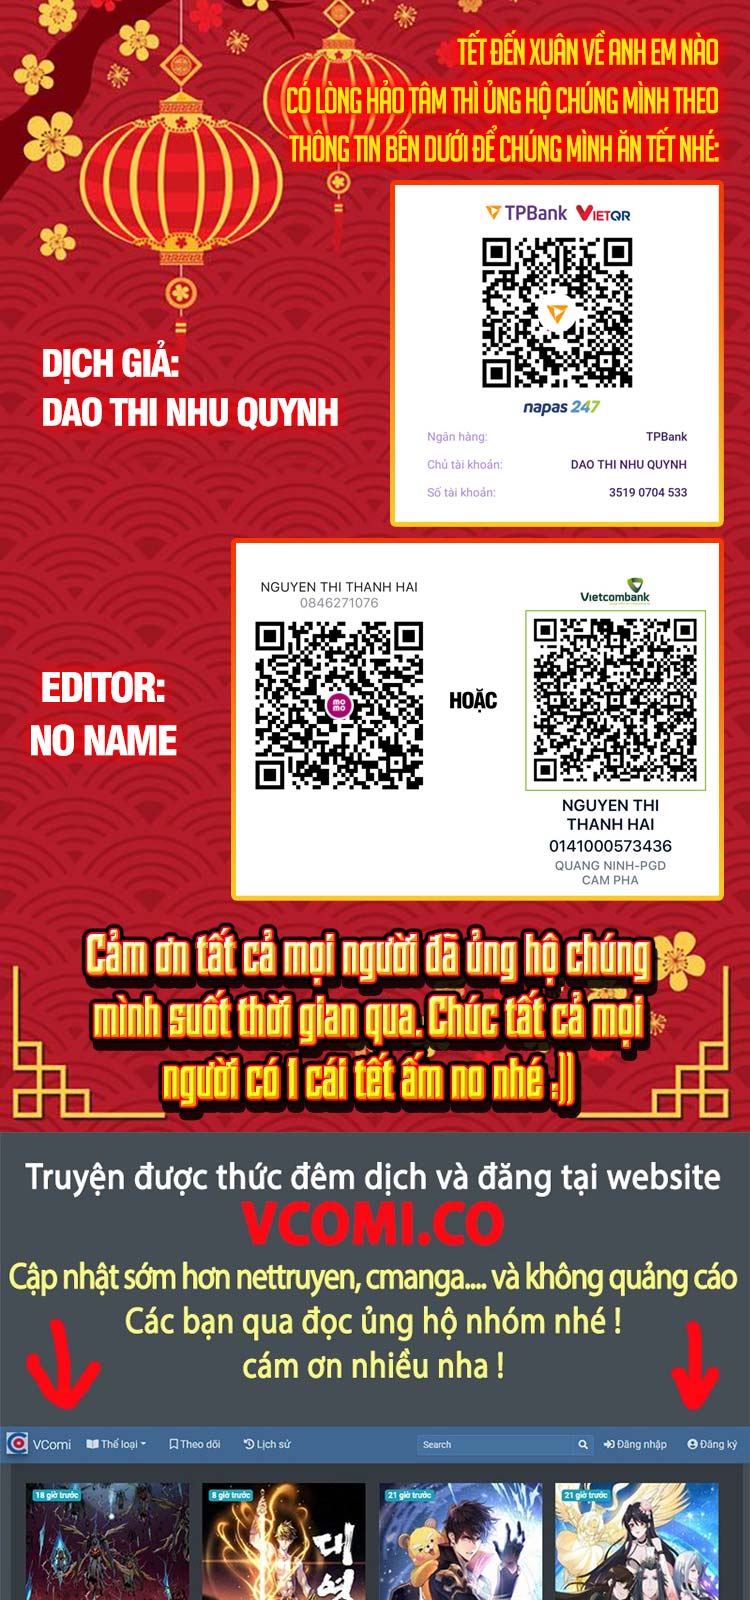 Bắt Đầu Với Chí Tôn Đan Điền Chương 95 - Vcomic.net